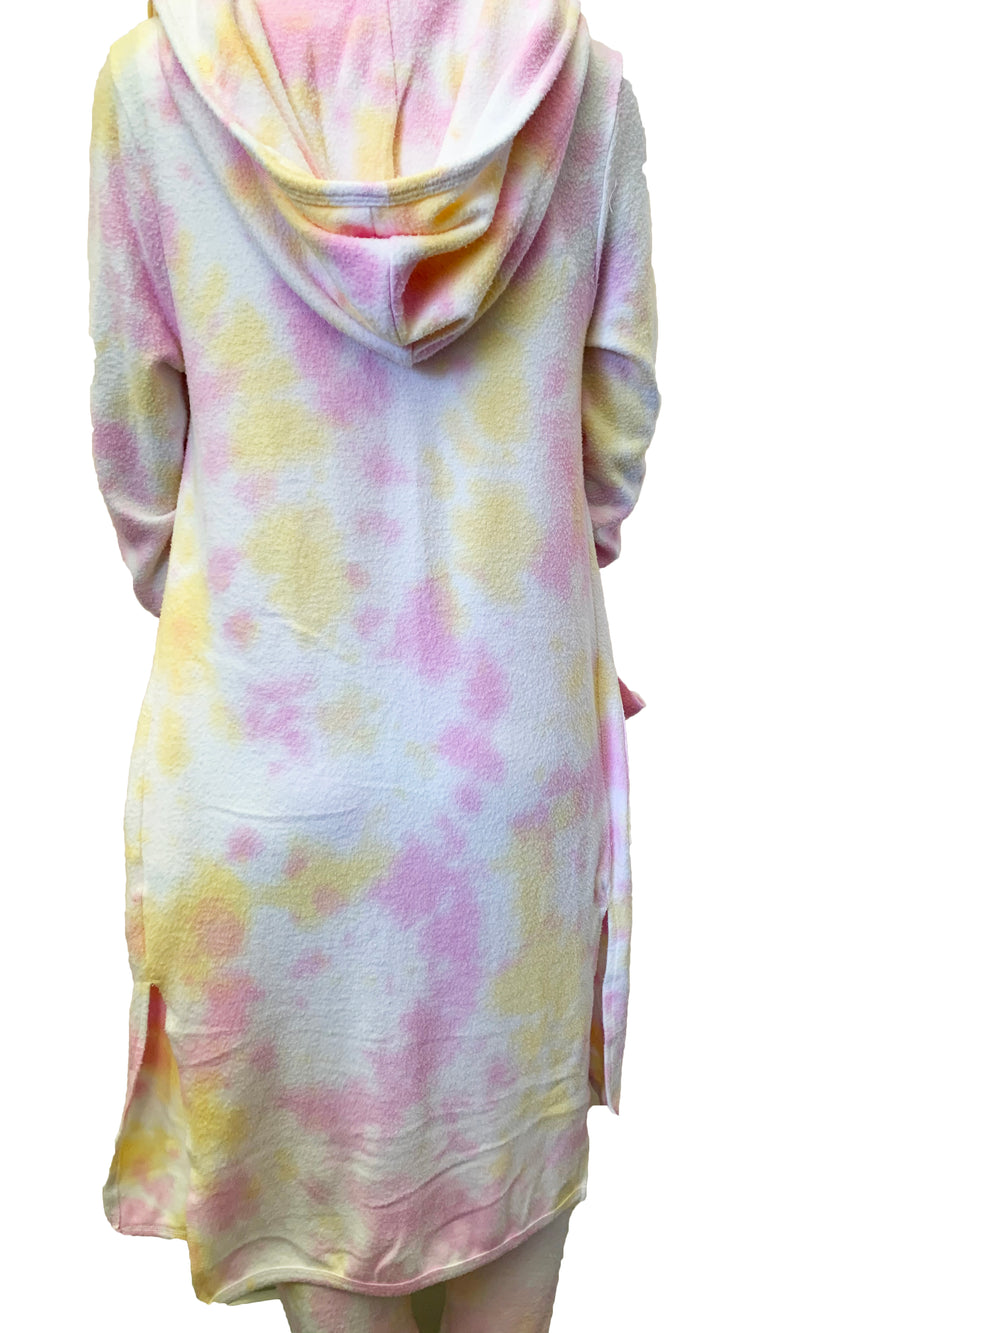 Rainbow Sherbert Tie Dye Duster - Kingfisher Road - Online Boutique